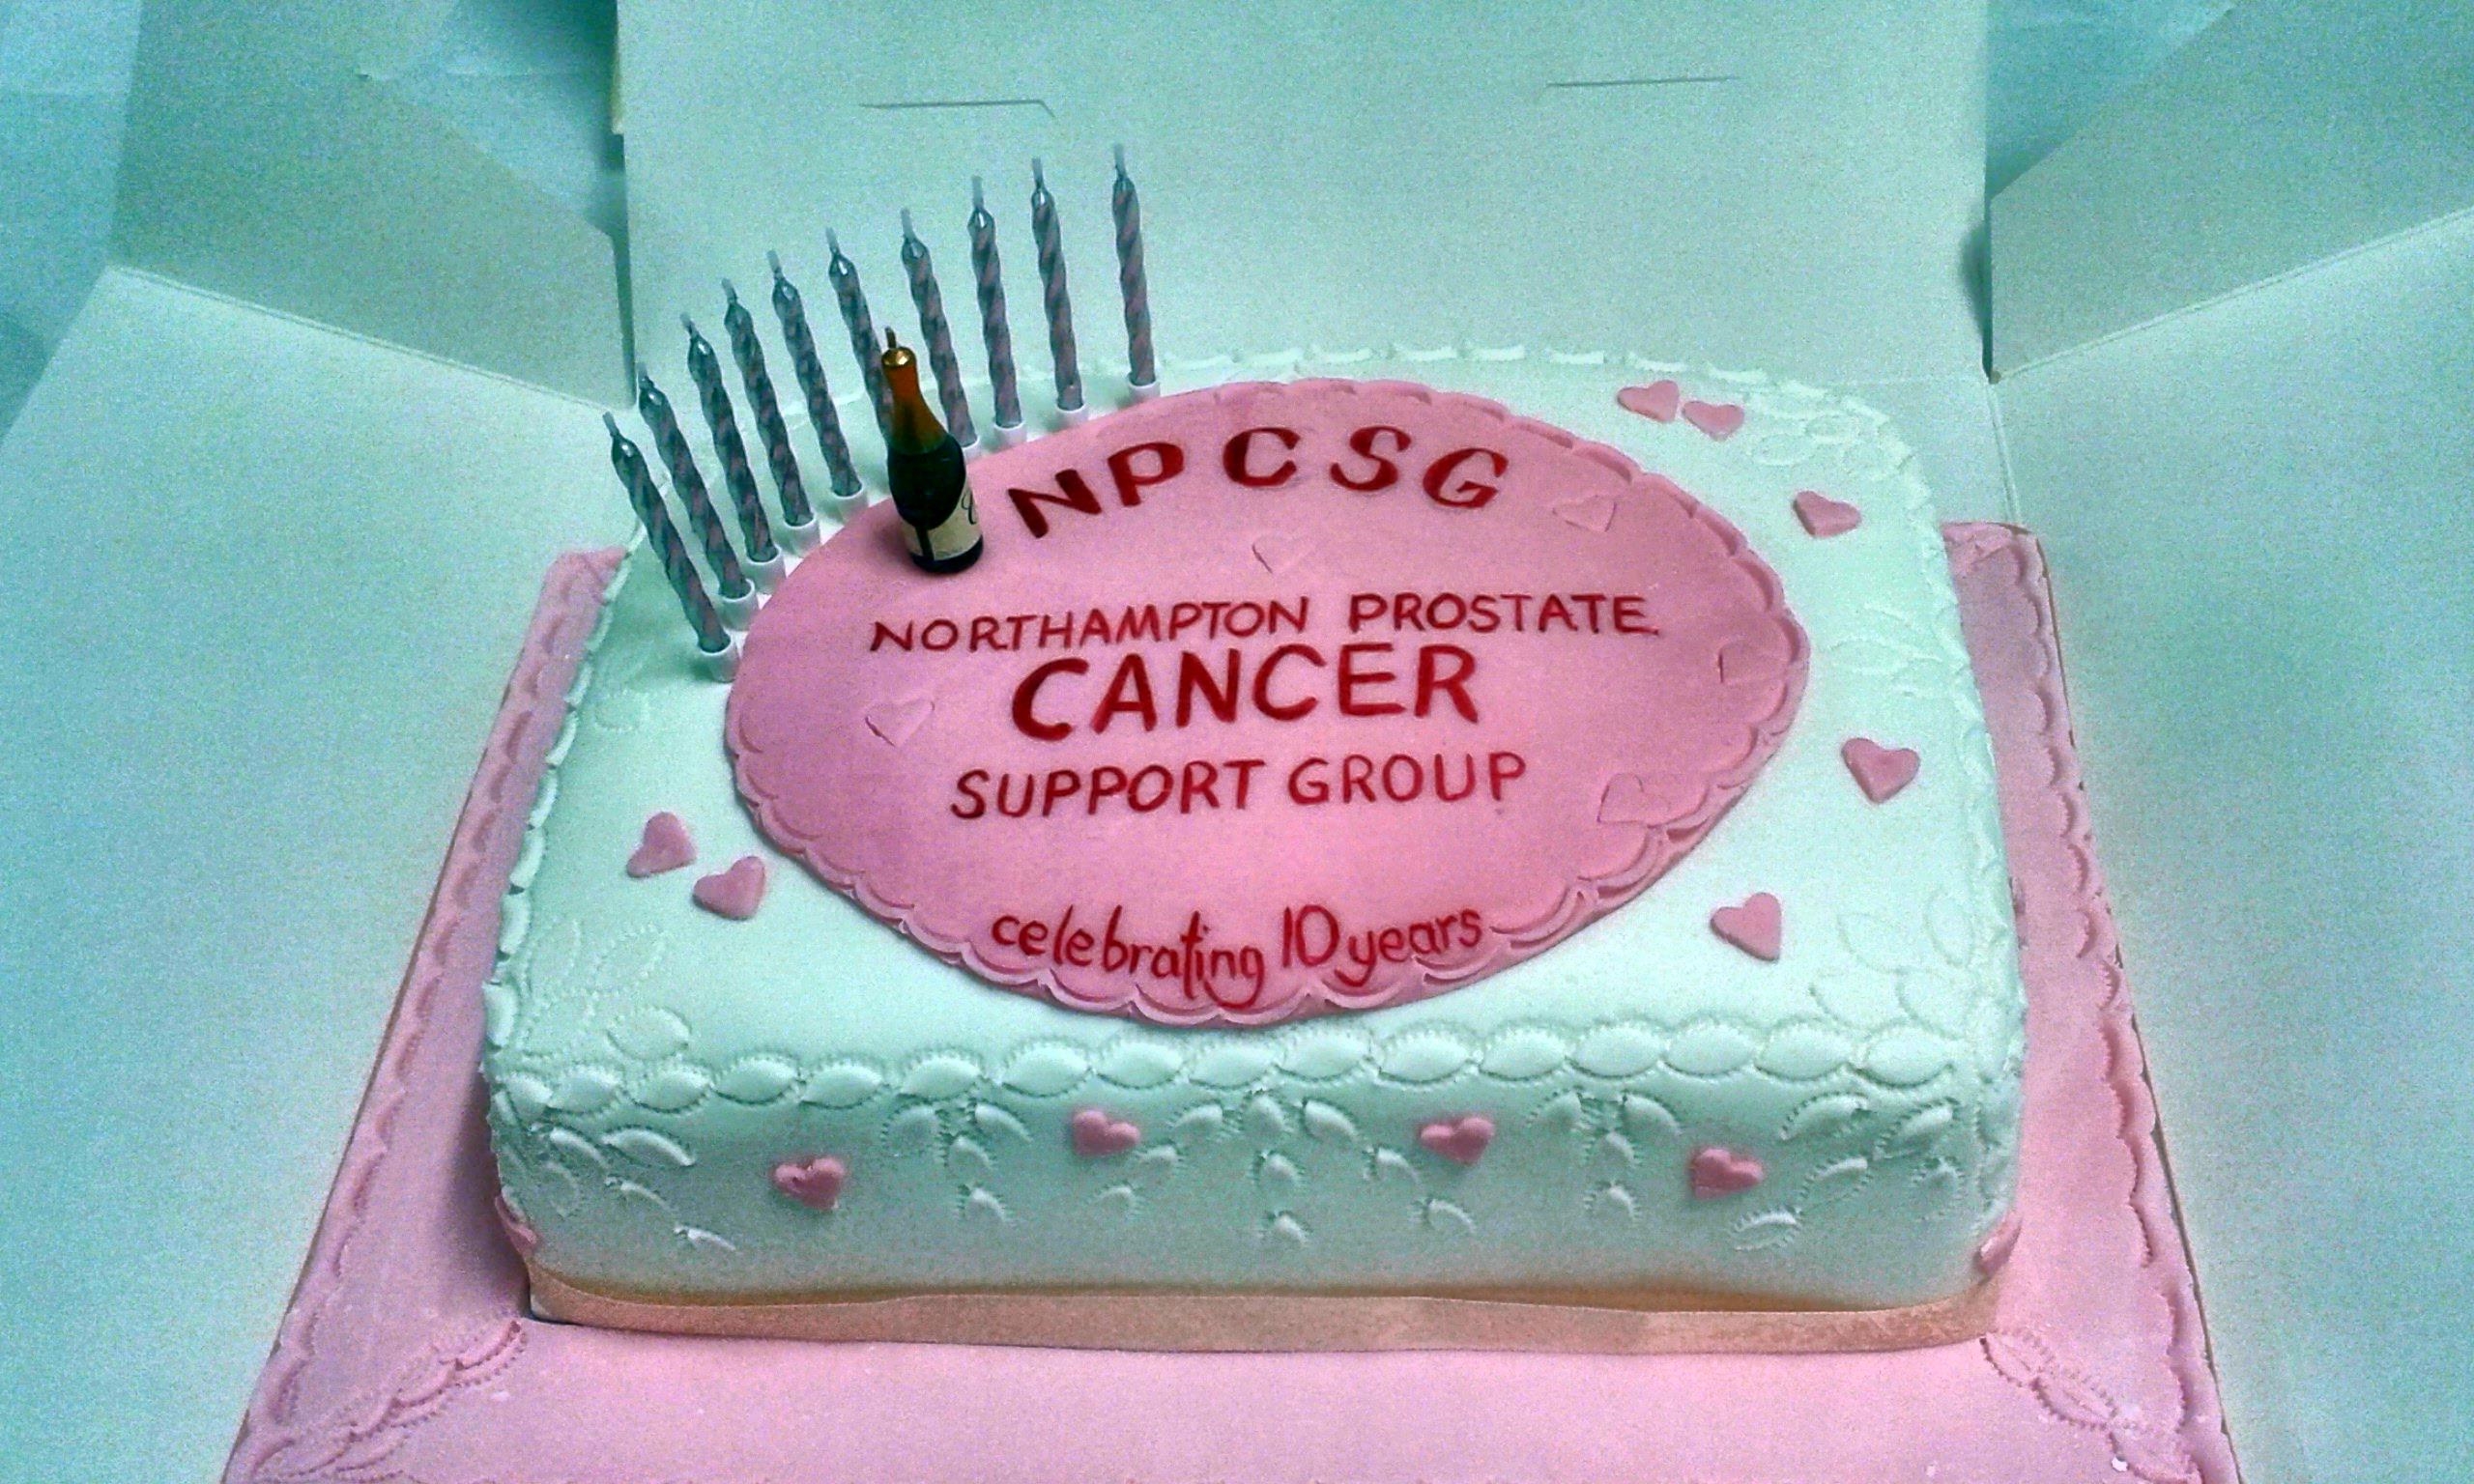 10th Anniversary - The Cake!